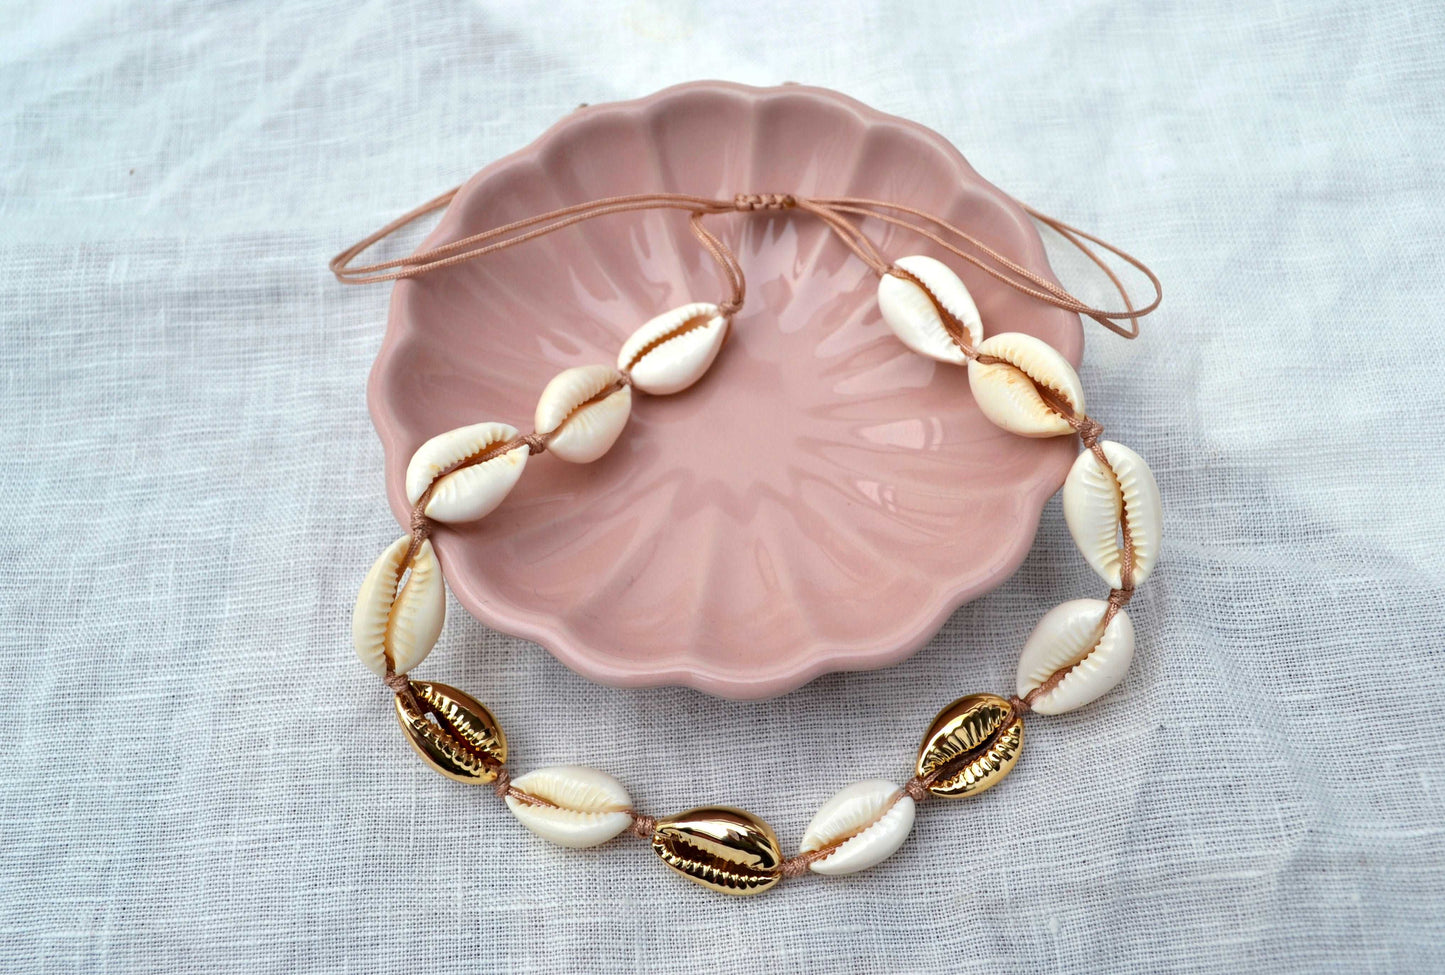 Kauri Muschel Kette mit goldenen und weißen Muscheln in einer rosa Schale